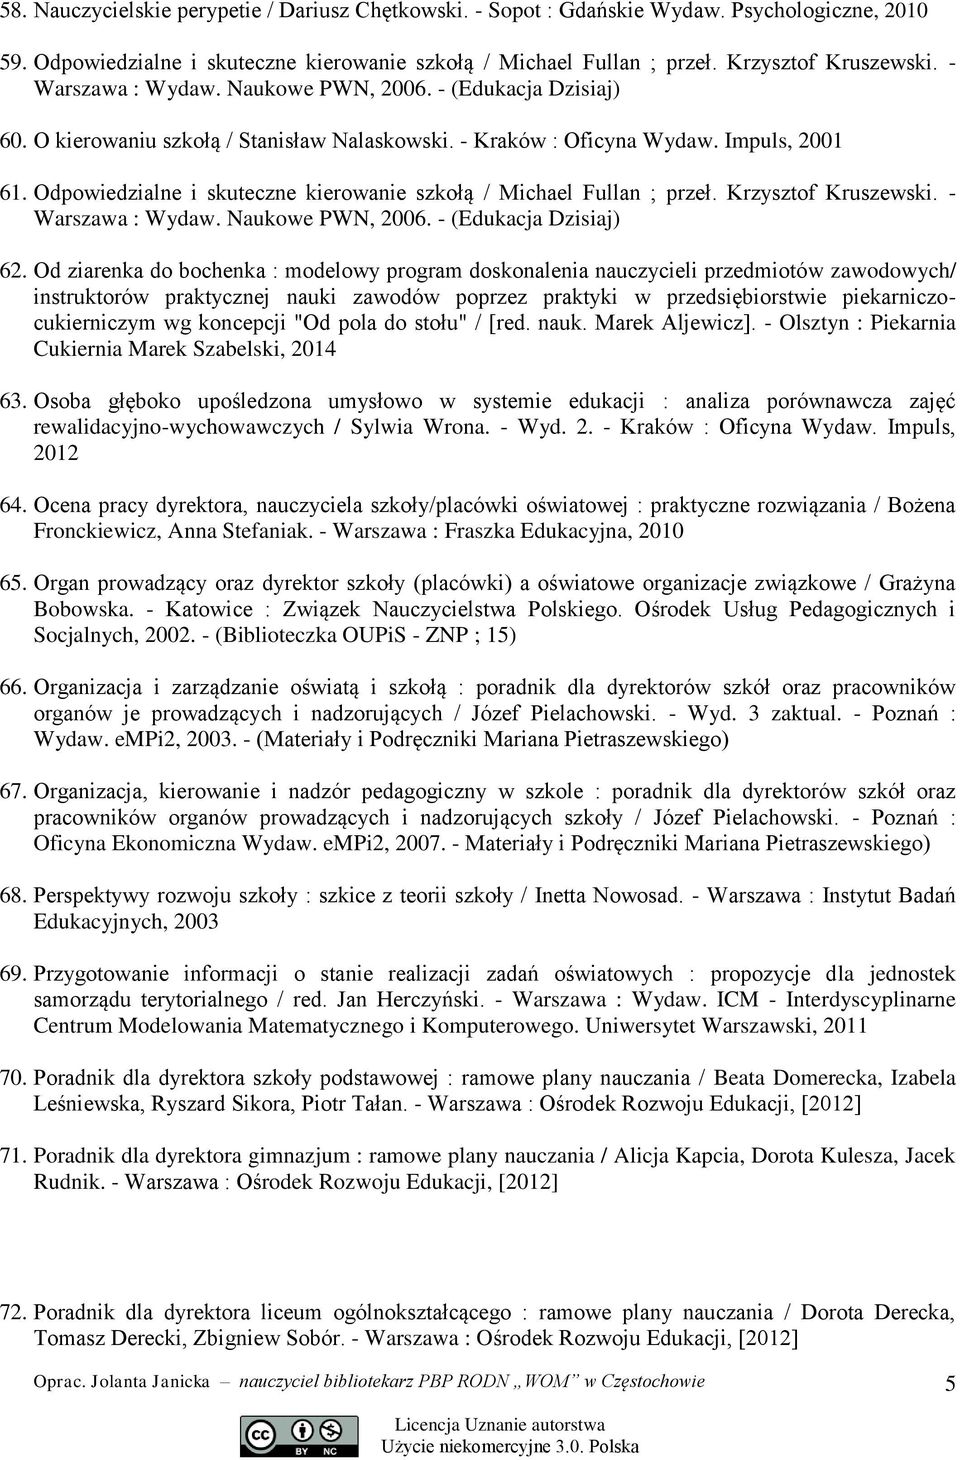 Odpowiedzialne i skuteczne kierowanie szkołą / Michael Fullan ; przeł. Krzysztof Kruszewski. - Warszawa : Wydaw. Naukowe PWN, 2006. - (Edukacja Dzisiaj) 62.